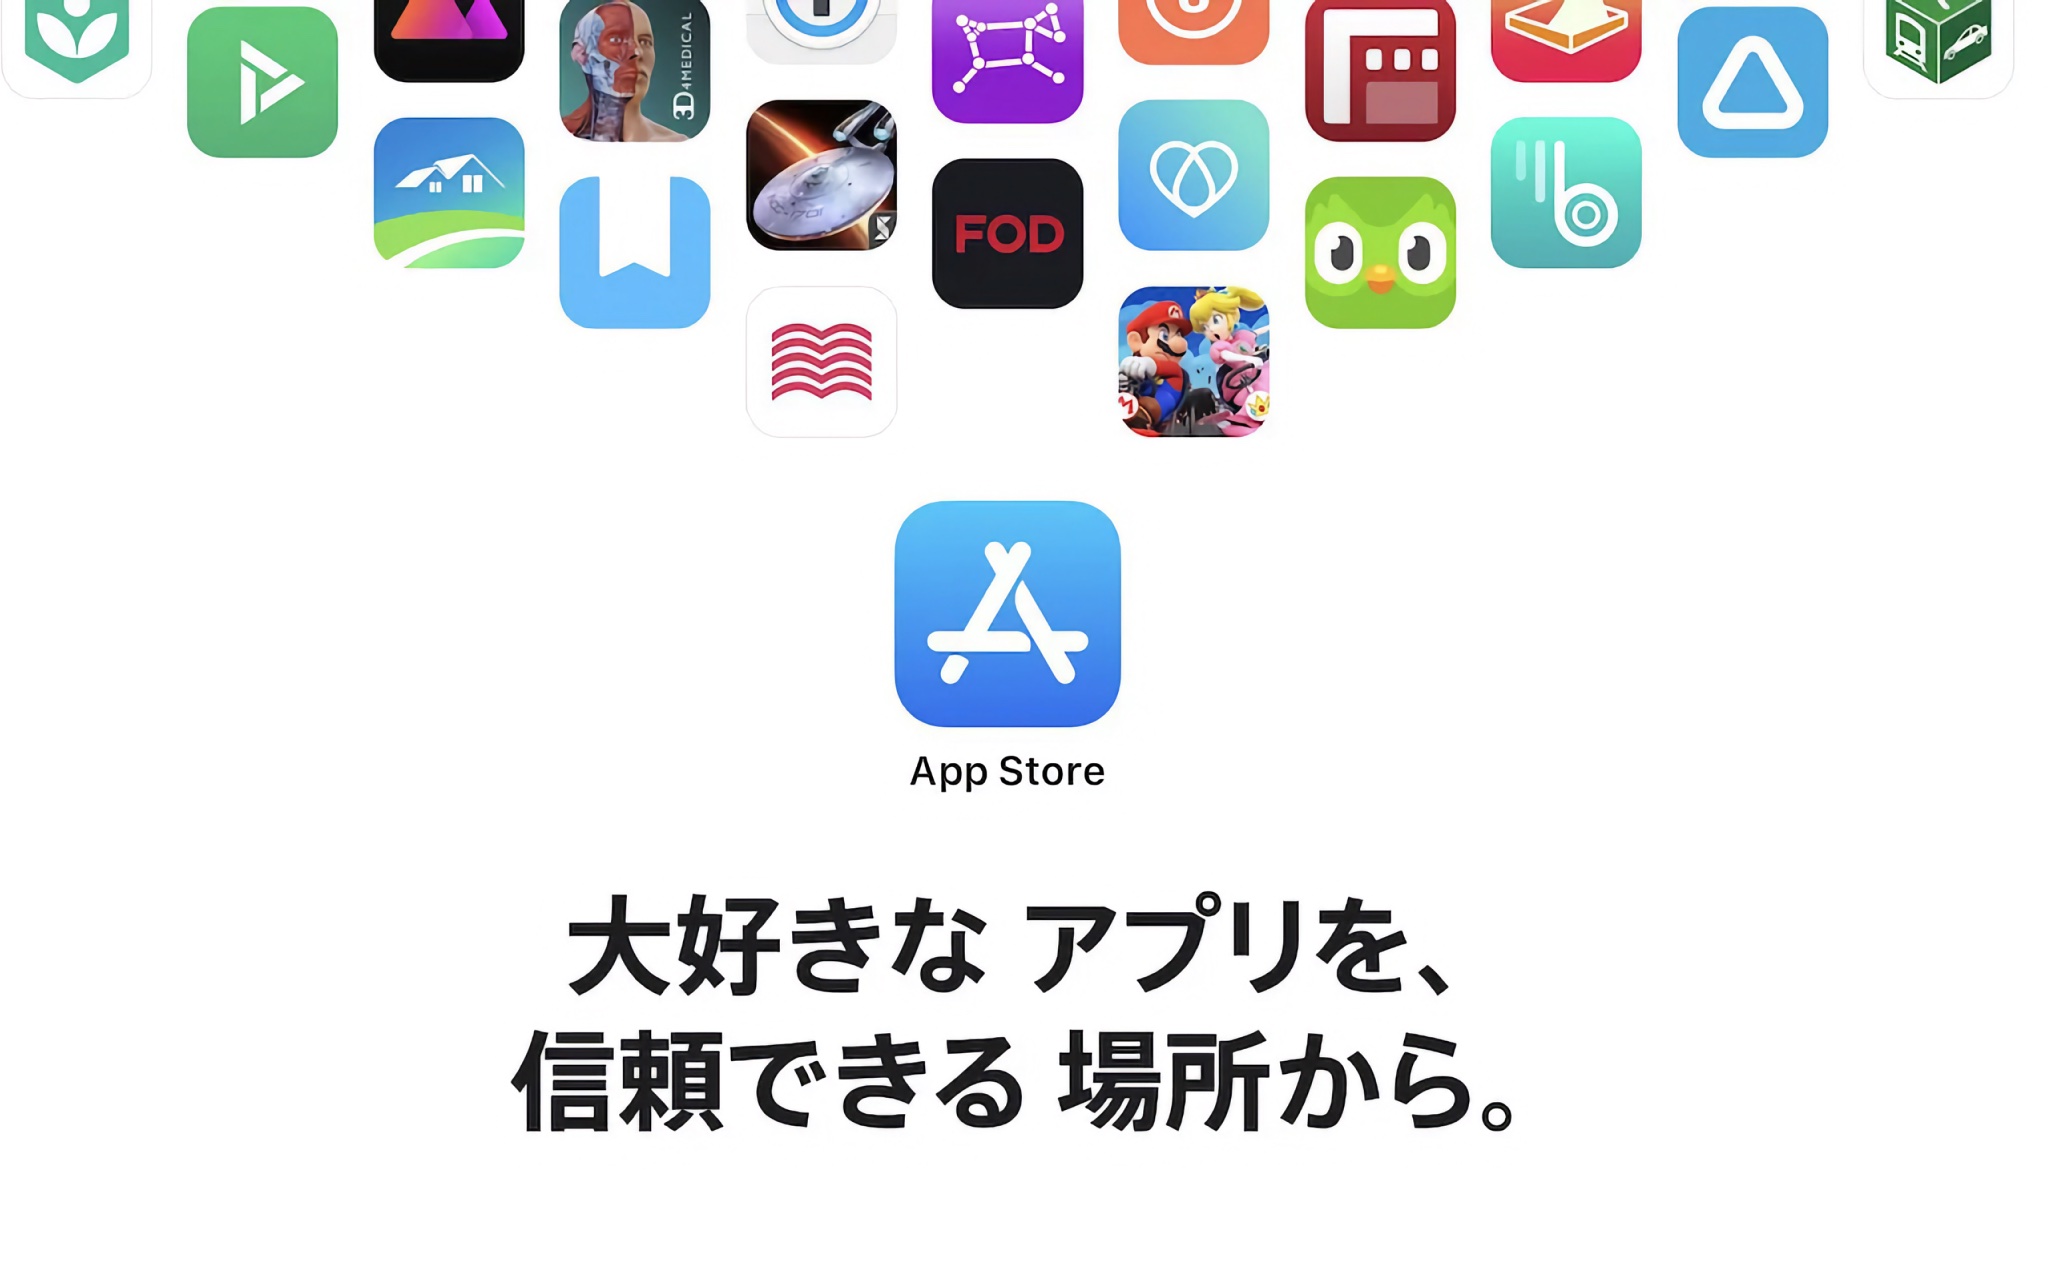 Nhật Bản theo bước EU, buộc Apple cho phép tải app từ cửa hàng ngoài trên iPhone?